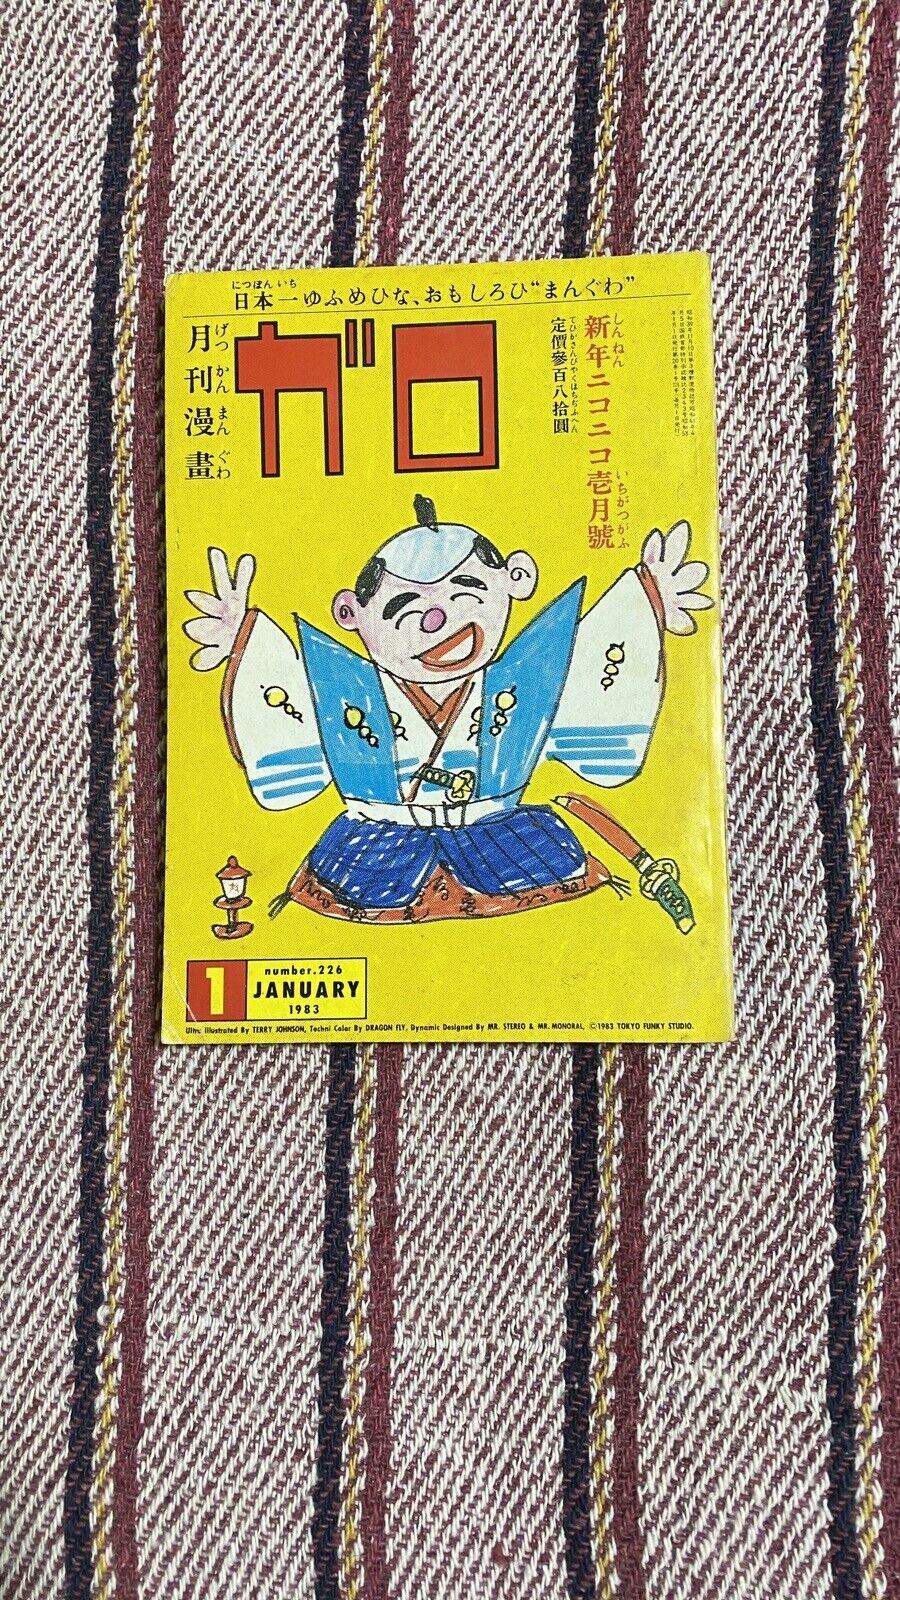 Garo monthly january  1983 cover by Teruhiko Yumura  aka king terry